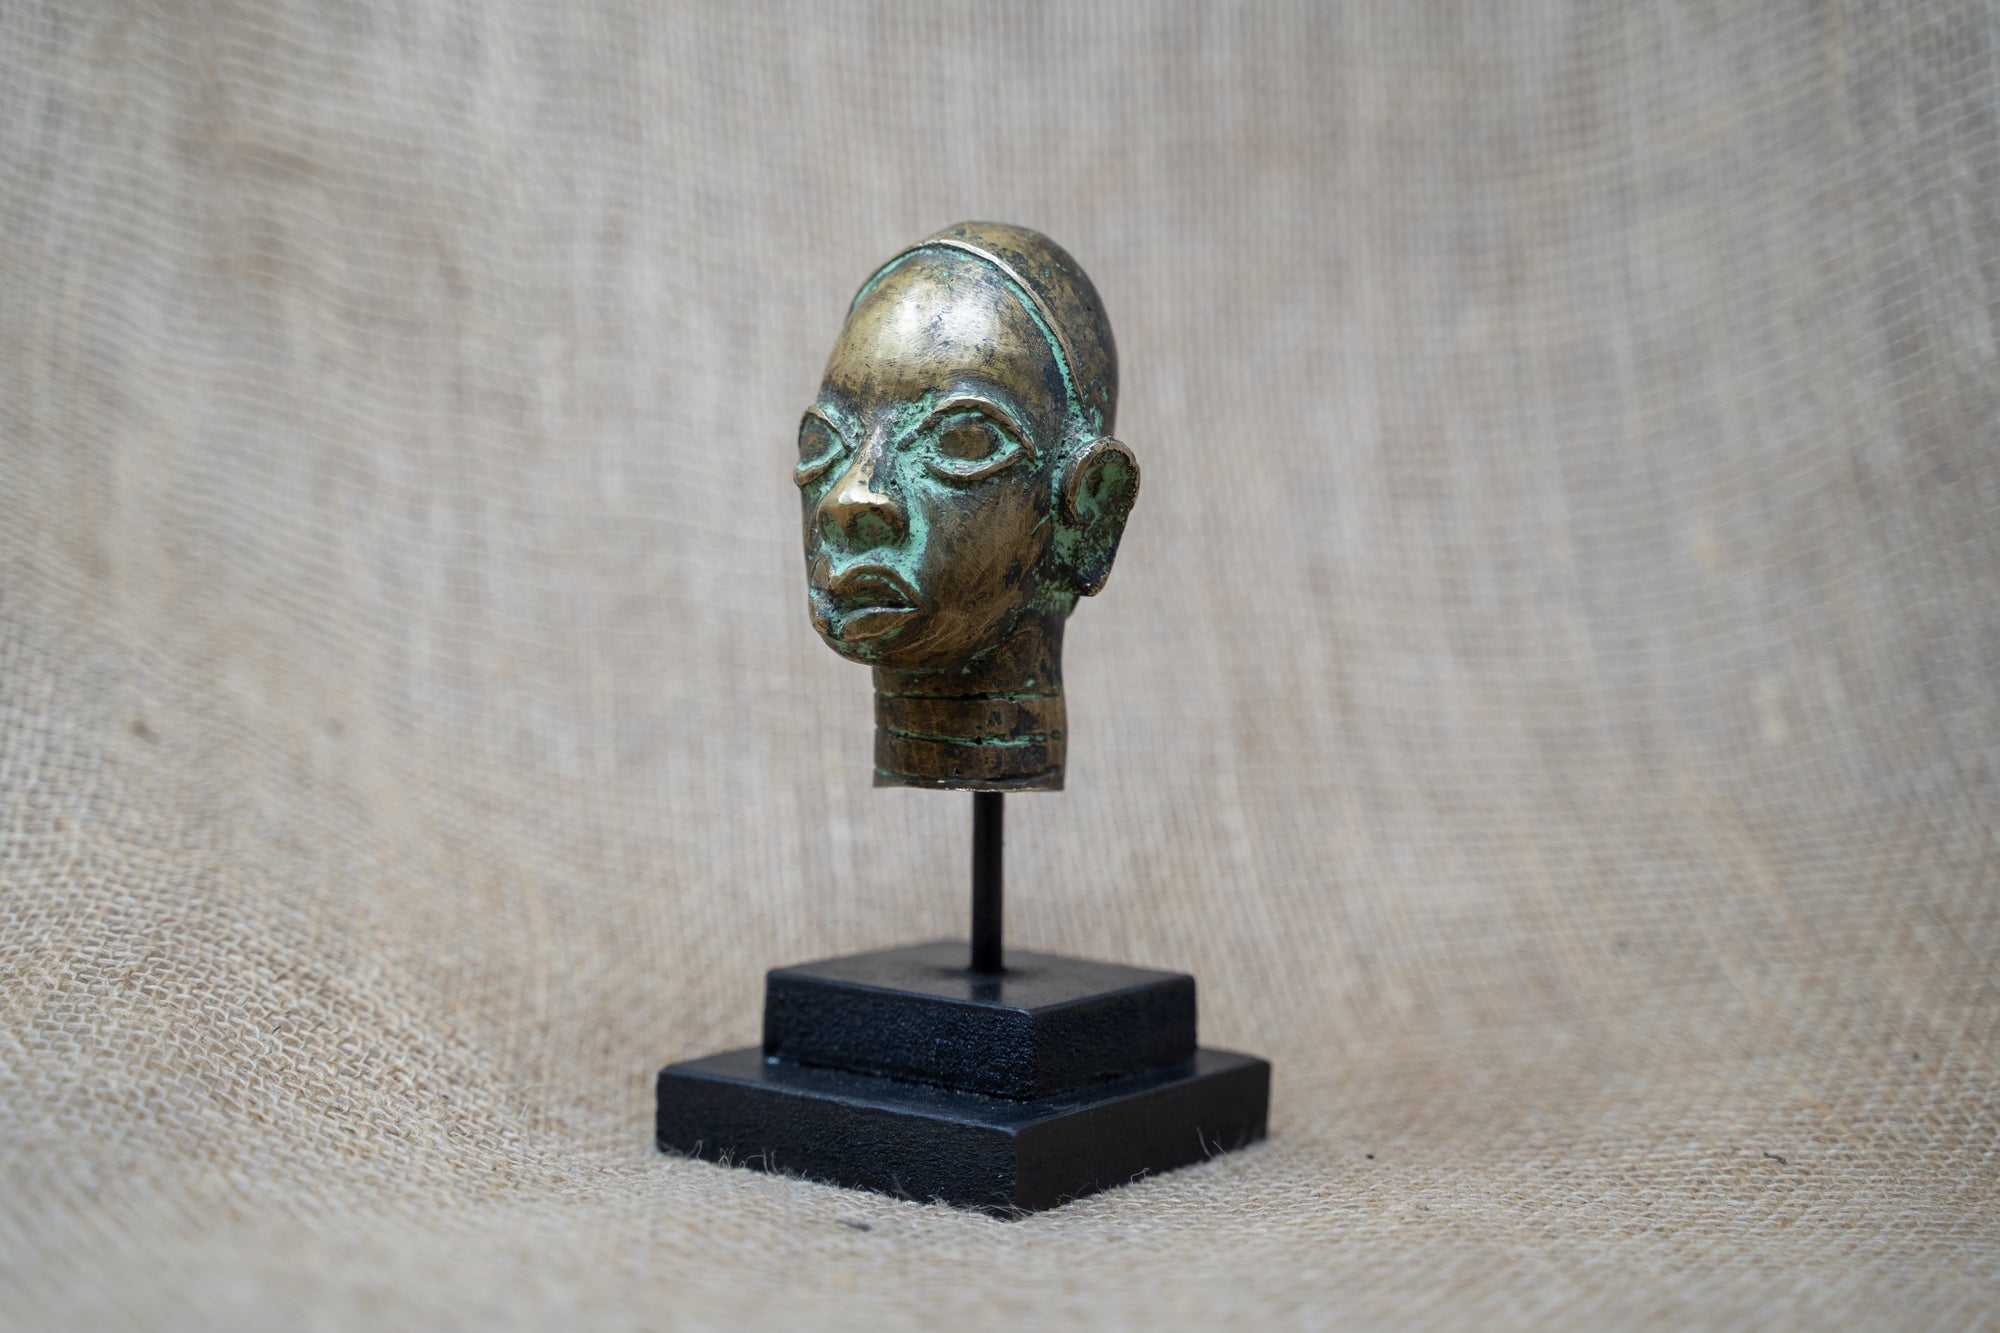 Benin Bronze Head - 37.8